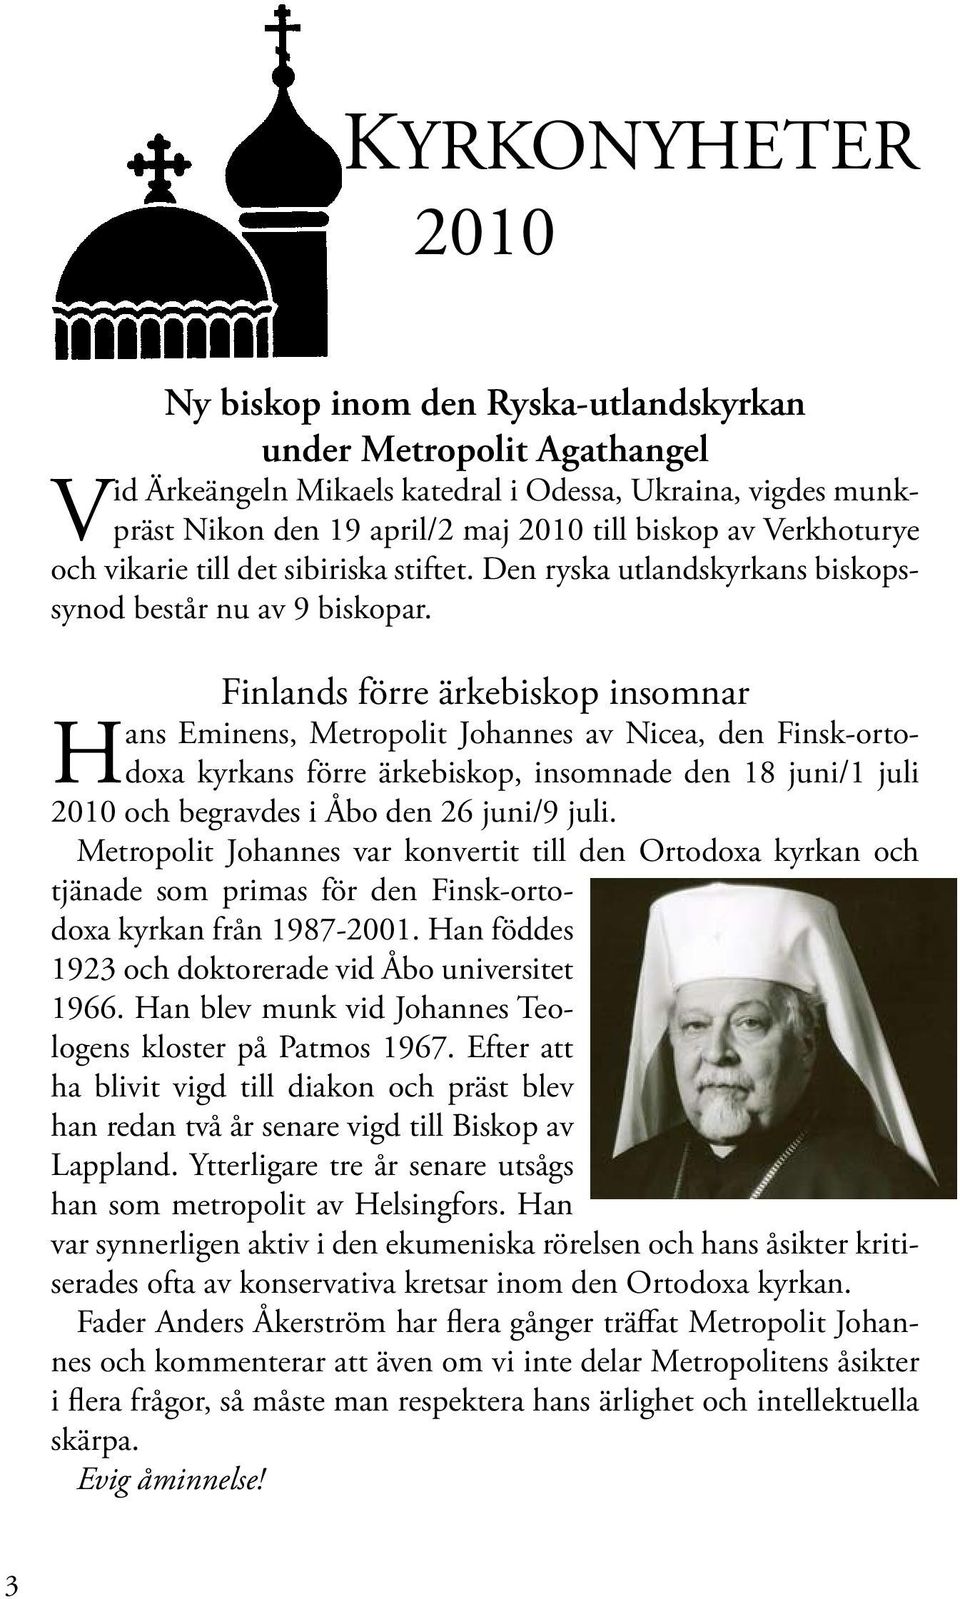 Finlands förre ärkebiskop insomnar Hans Eminens, Metropolit Johannes av Nicea, den Finsk-ortodoxa kyrkans förre ärkebiskop, insomnade den 18 juni/1 juli 2010 och begravdes i Åbo den 26 juni/9 juli.